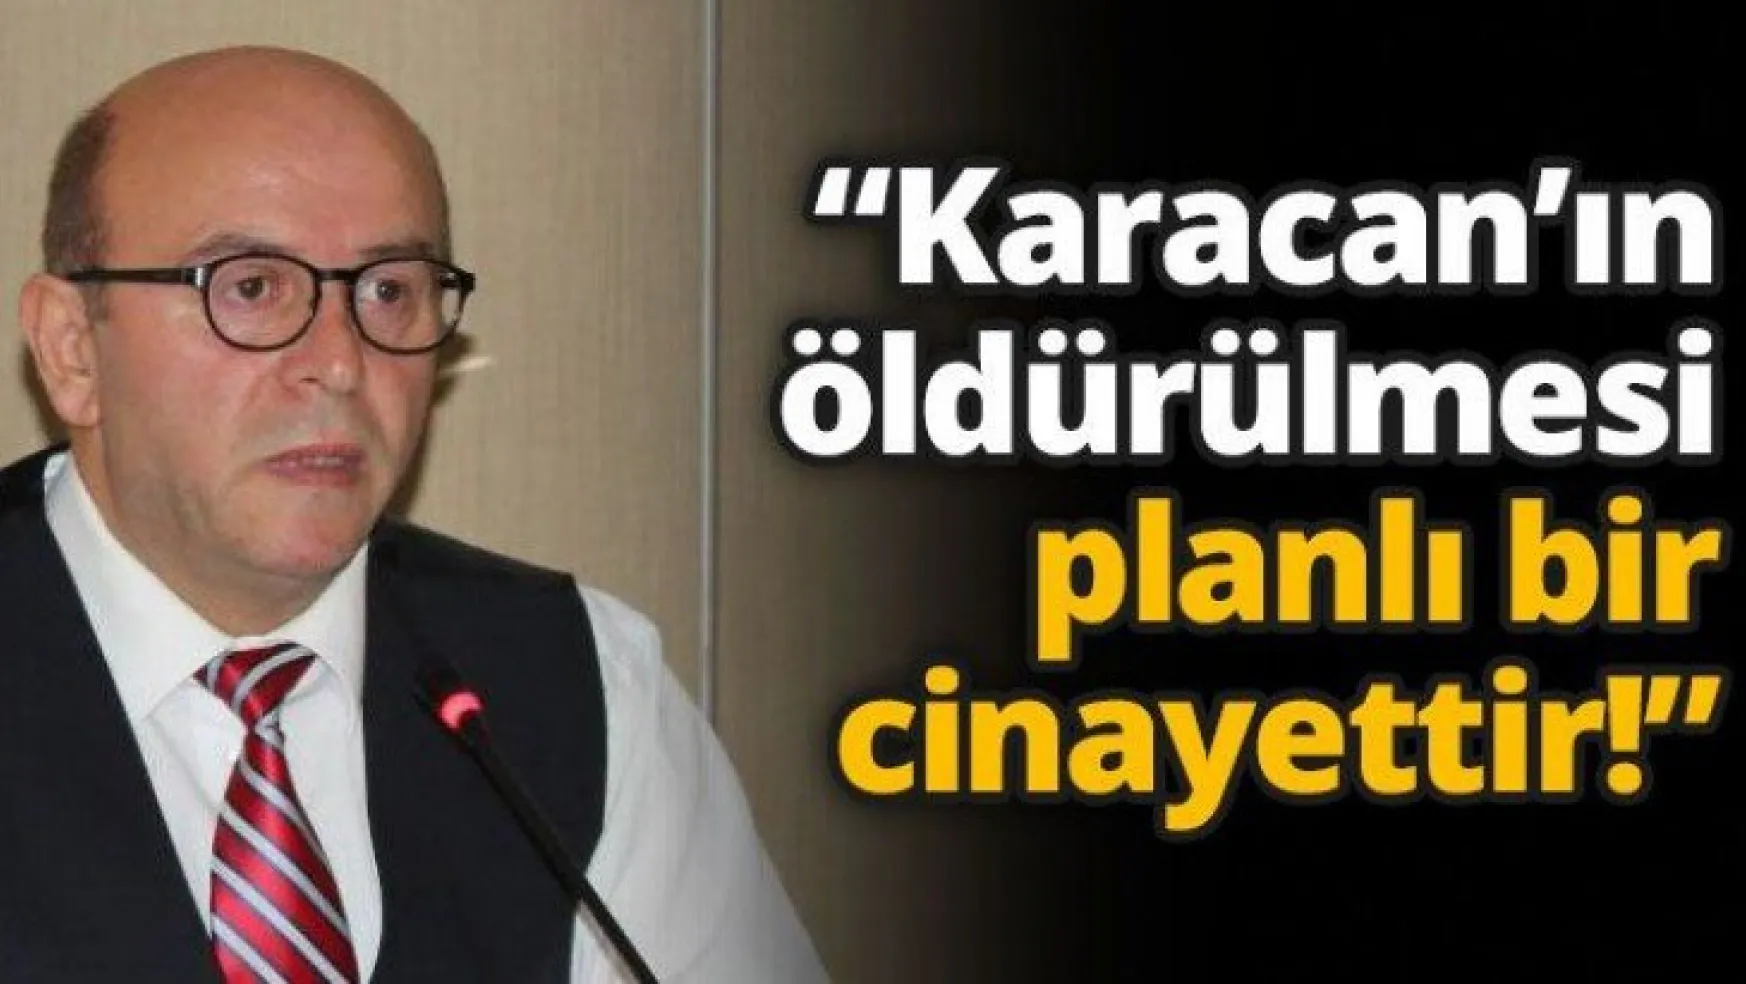 'Karacan'ın öldürülmesi planlı bir cinayettir!'